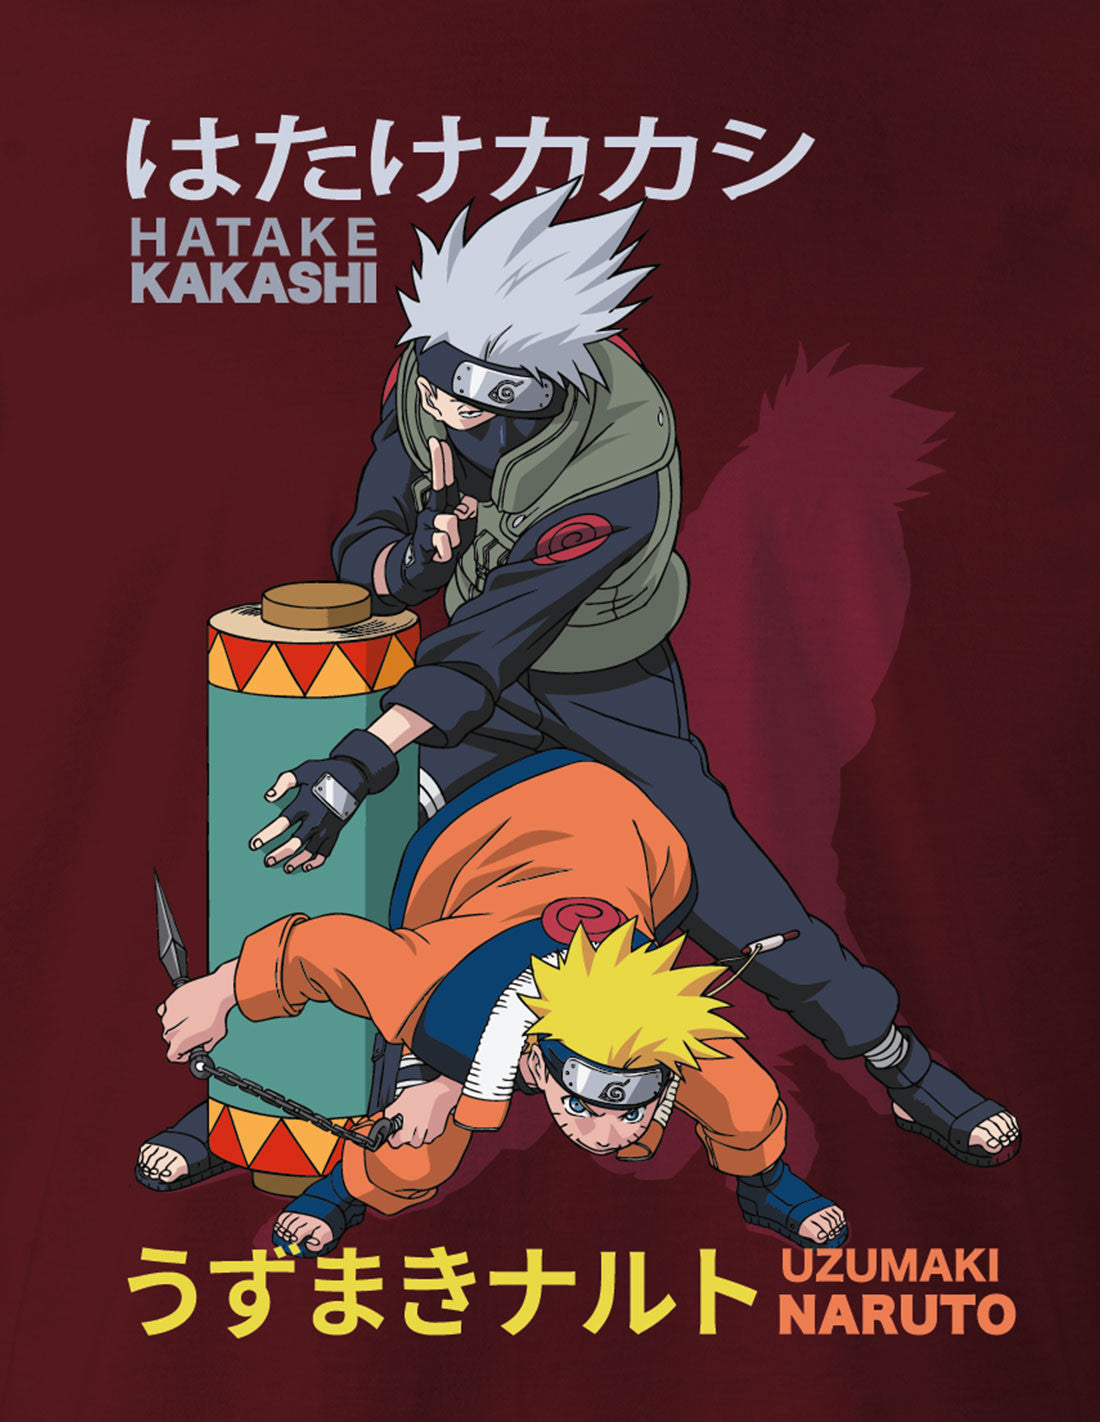 T-shirt Naruto - Kakashi & Naruto